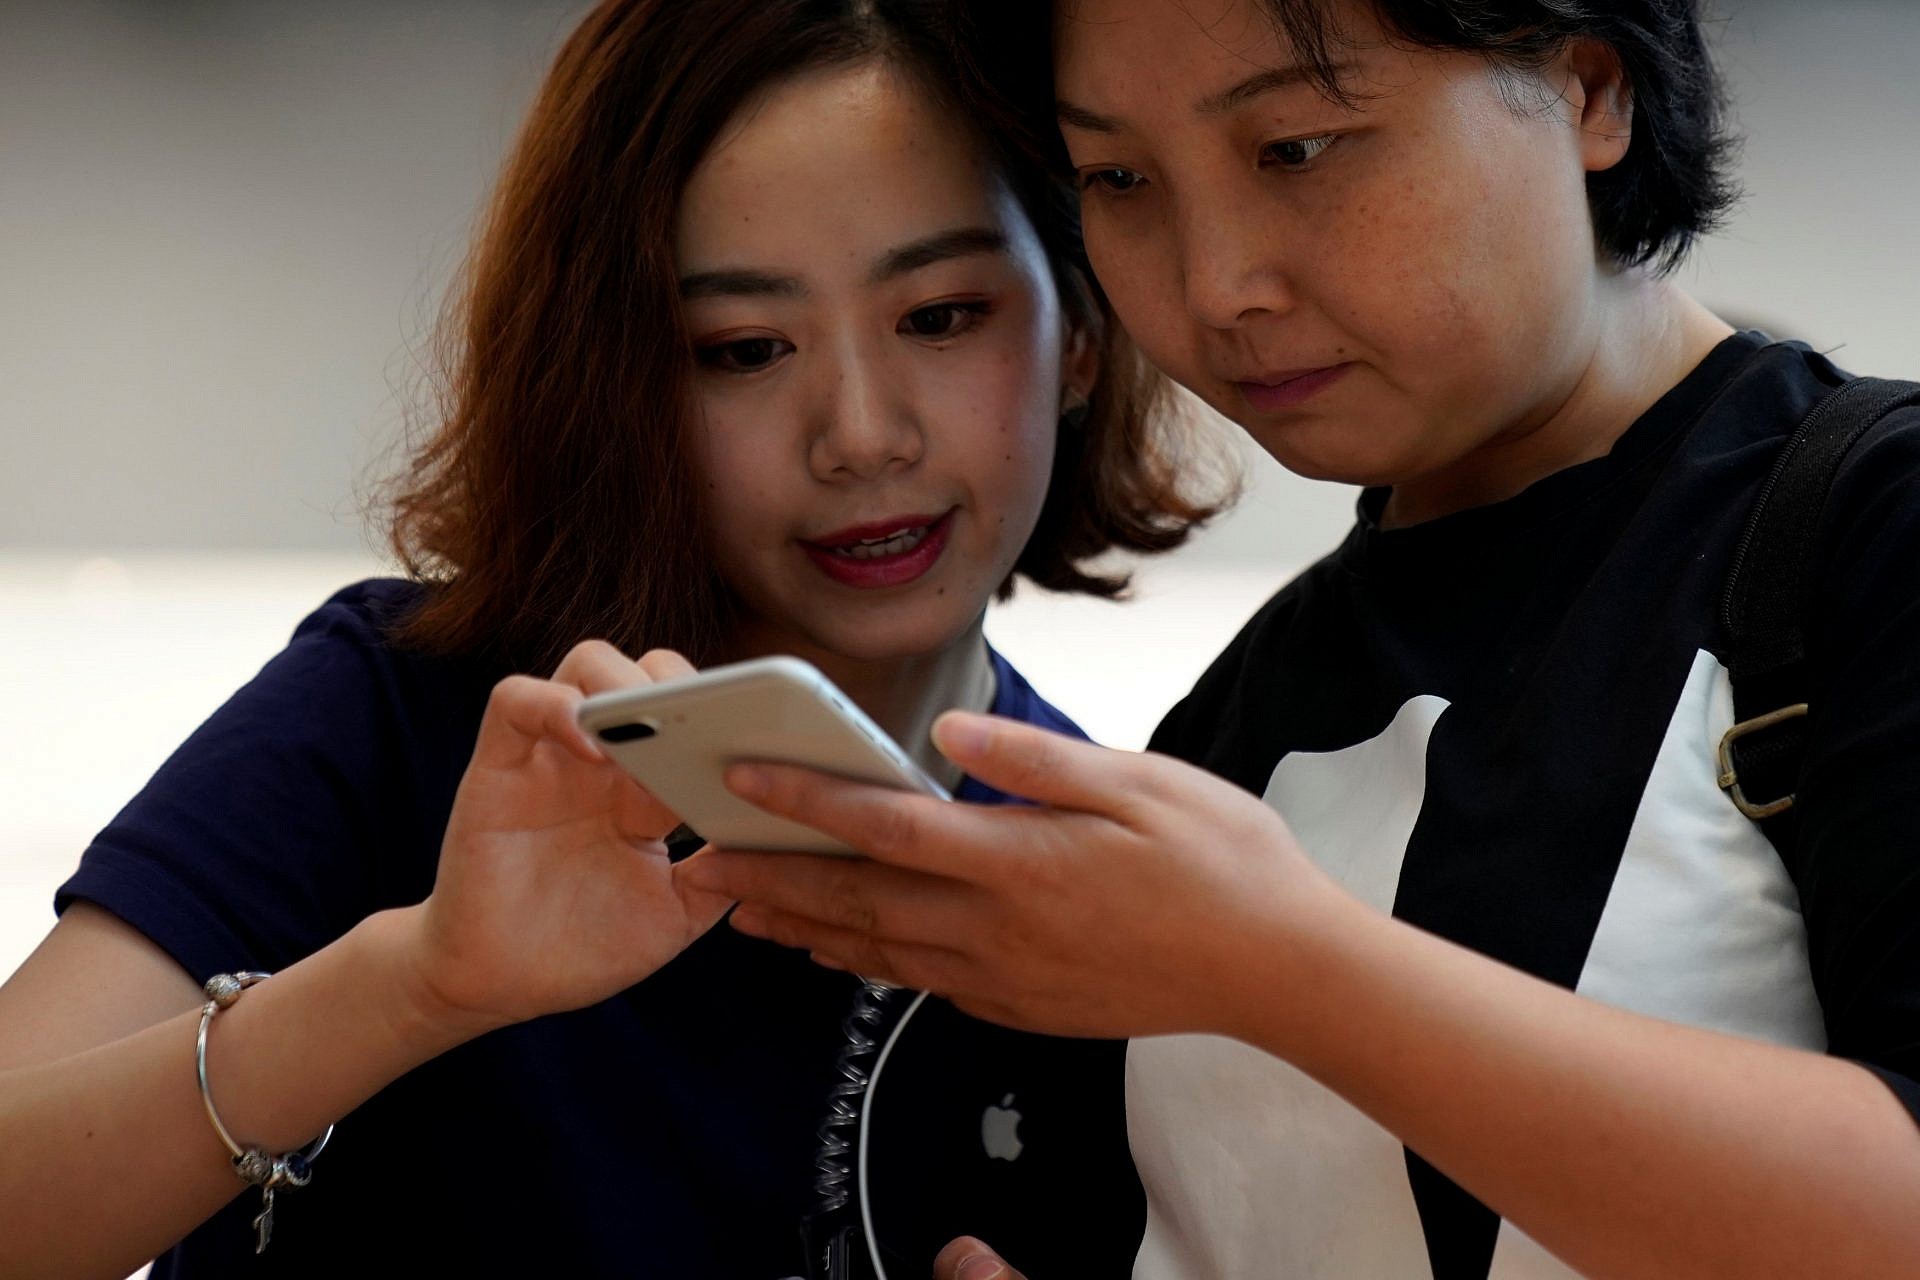 เผยร้านค้าออนไลน์ในจีนออกโปรลดราคา iPhone 8 แล้วหลังกระแสเงียบกริบ